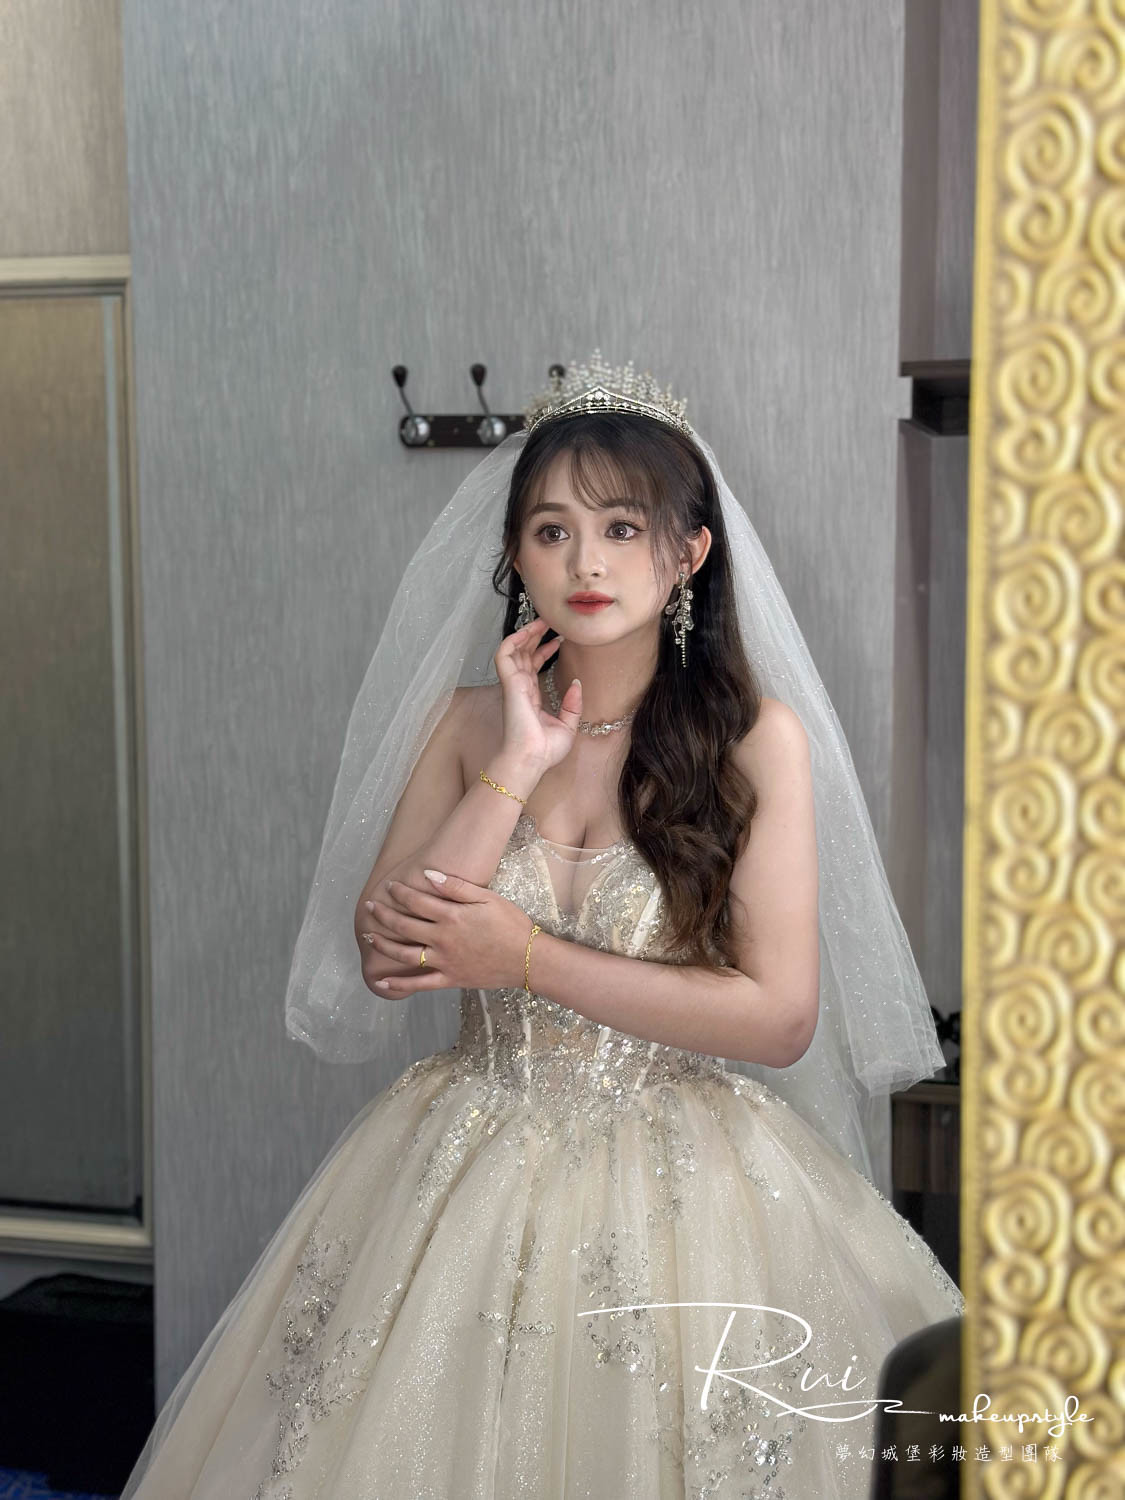 【新秘Rui】bride嘉苓 結婚造型 / 質感公主風